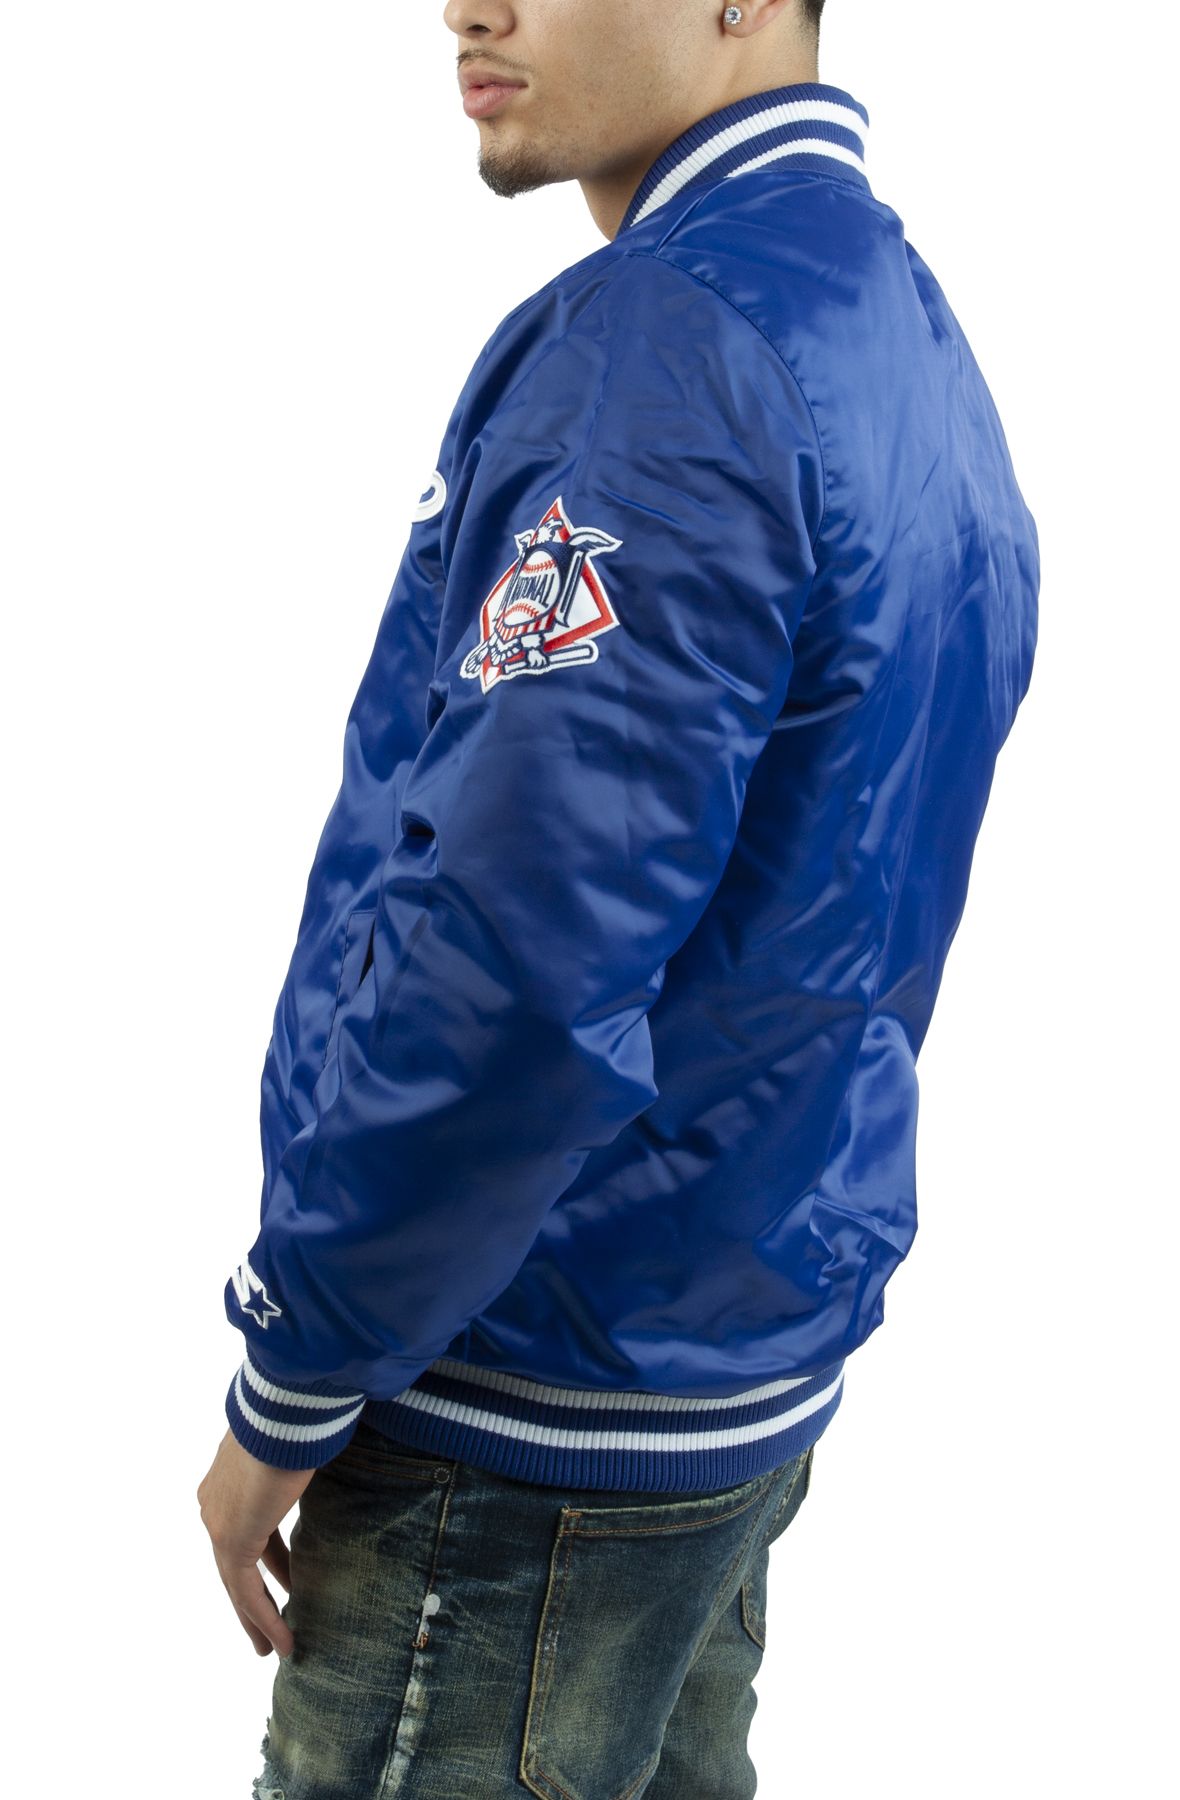 Vintage 80s Los Angeles Dodgers Starter Jacket Mens M Satin MLB Baseball  Blue